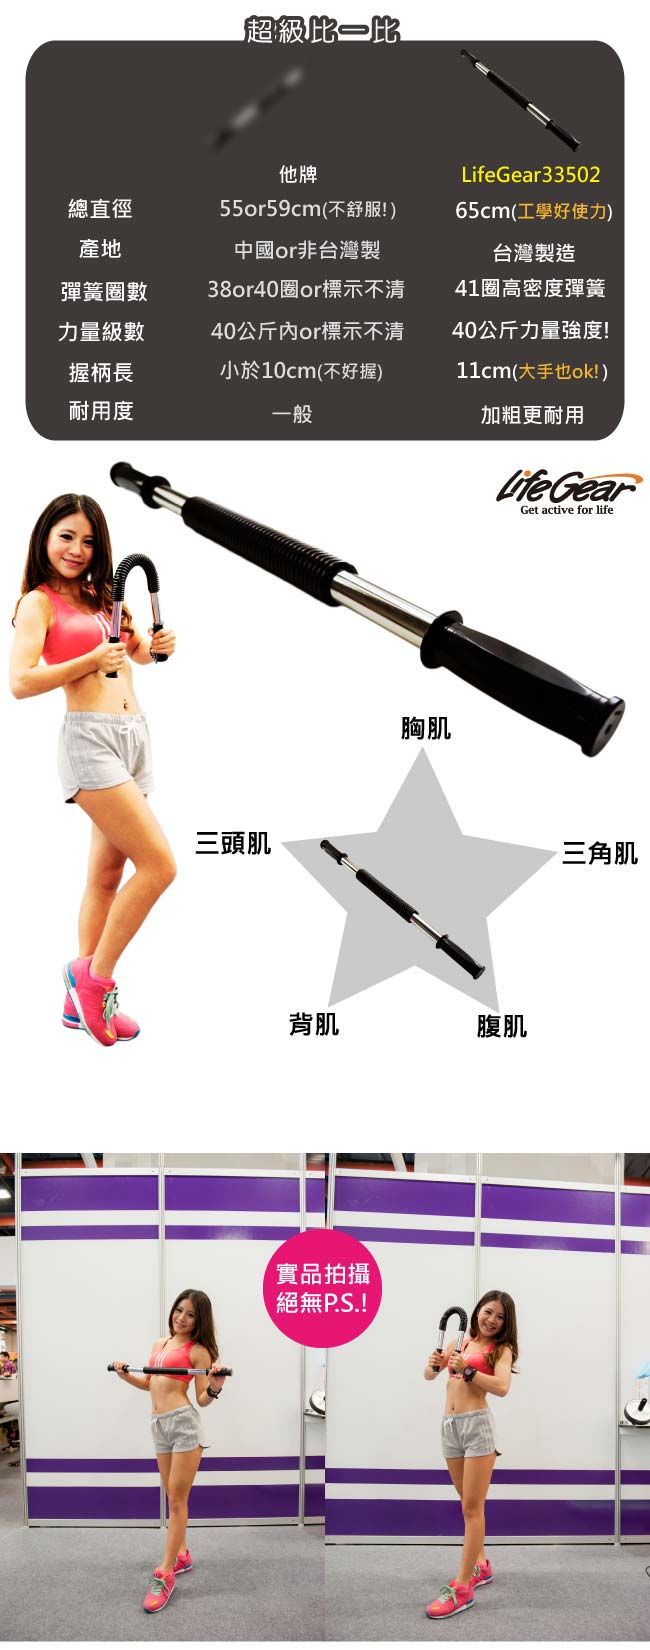 來福嘉 LifeGear - 33502 專業直徑65cm彈簧握力棒(臂力器-台灣製造)